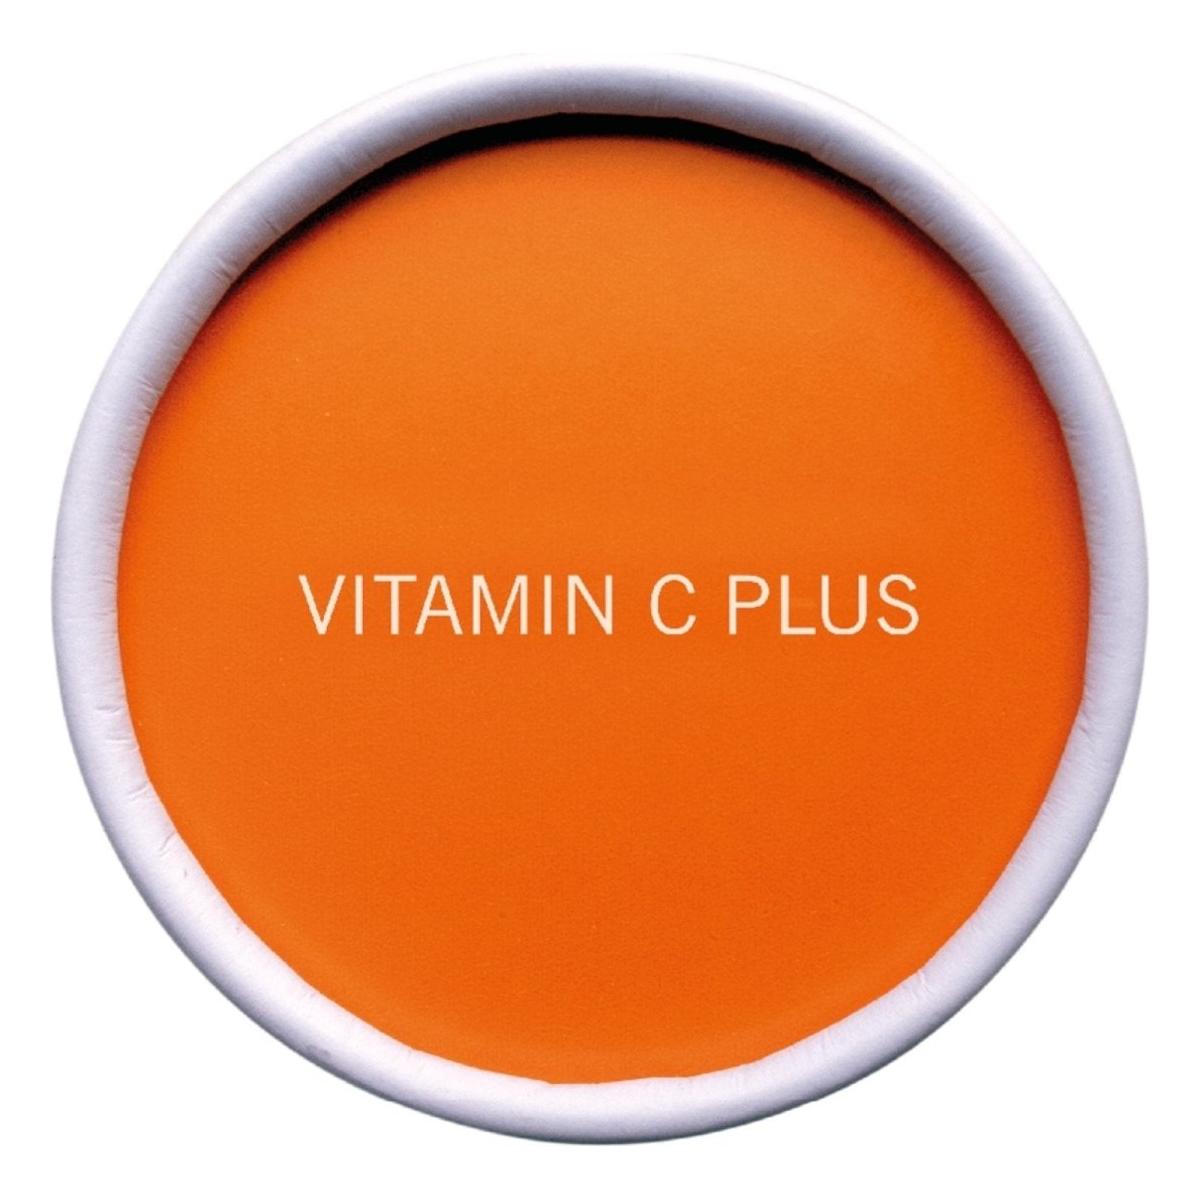 Advanced Nutrition Programme | Vitamin C Plus | 80 caps - DG International Ventures Limited